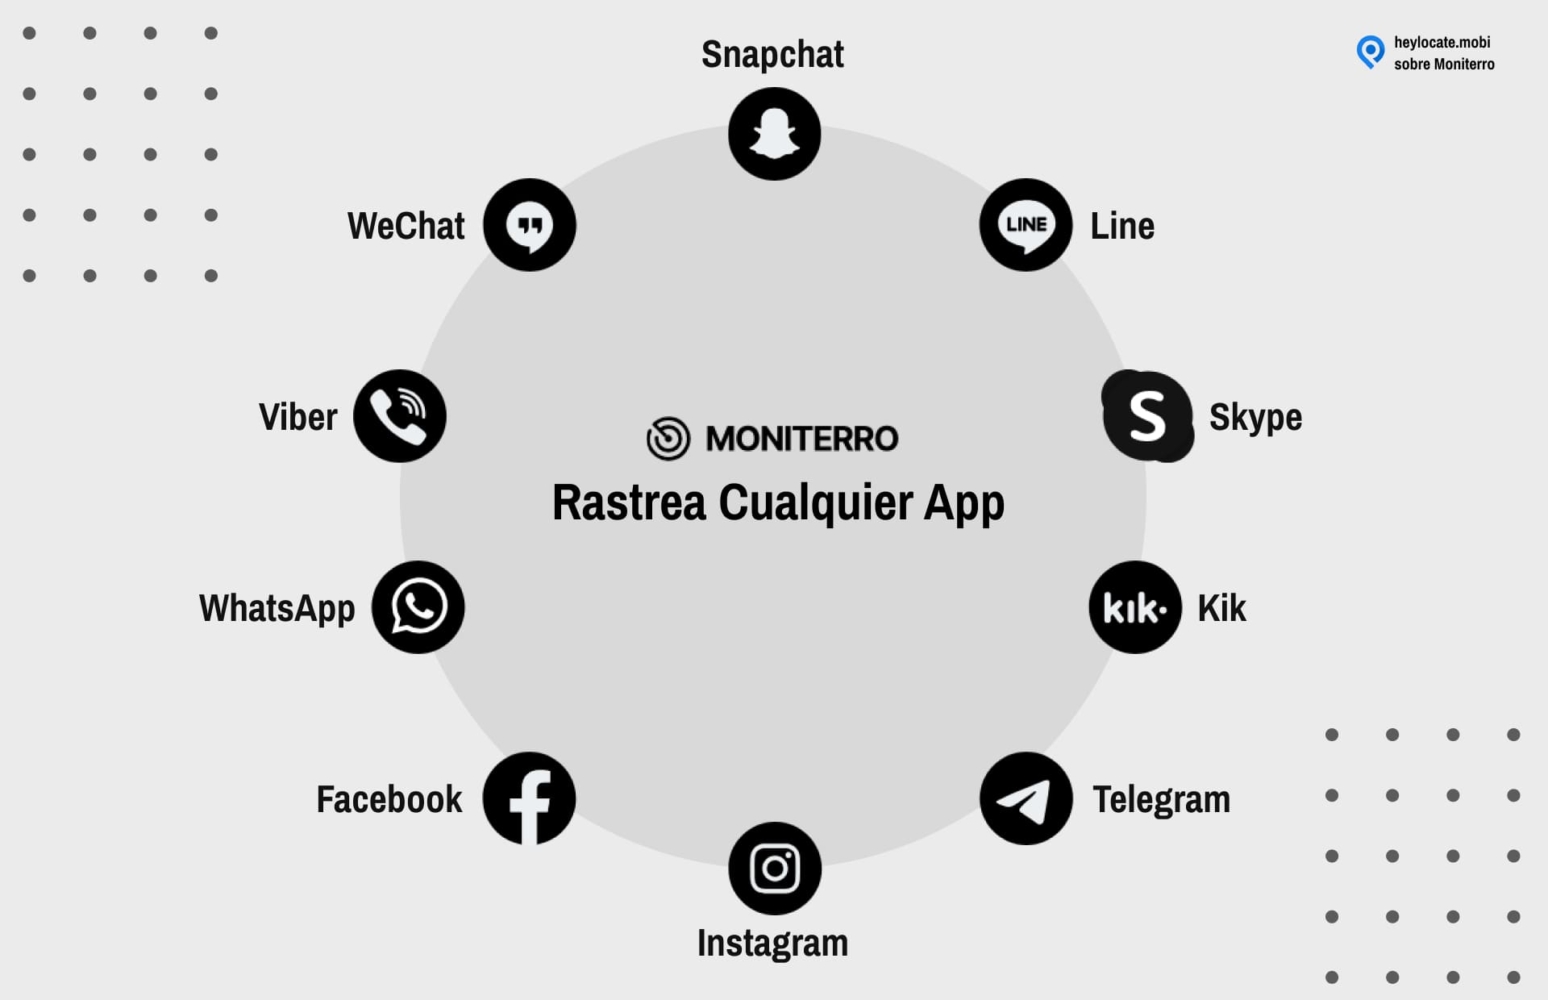 Gráfico que muestra la función de MONITERRO 'Monitorear cualquier aplicación' con un círculo de íconos que representan varias aplicaciones sociales y de mensajería como Snapchat, Line, Skype, Kik, Telegram, Instagram, Facebook, WhatsApp, Viber y WeChat rodeando el logotipo de MONITERRO en el centro.